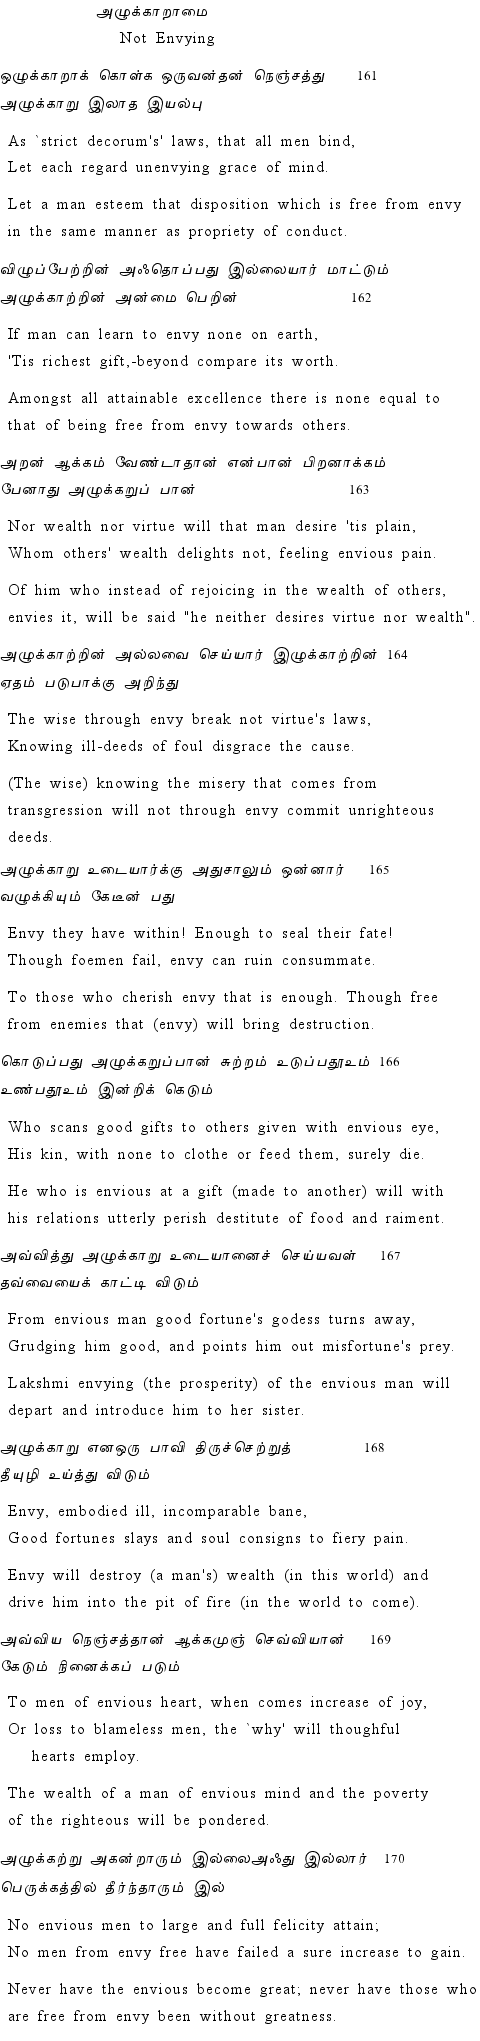 Text of Adhikaram 17